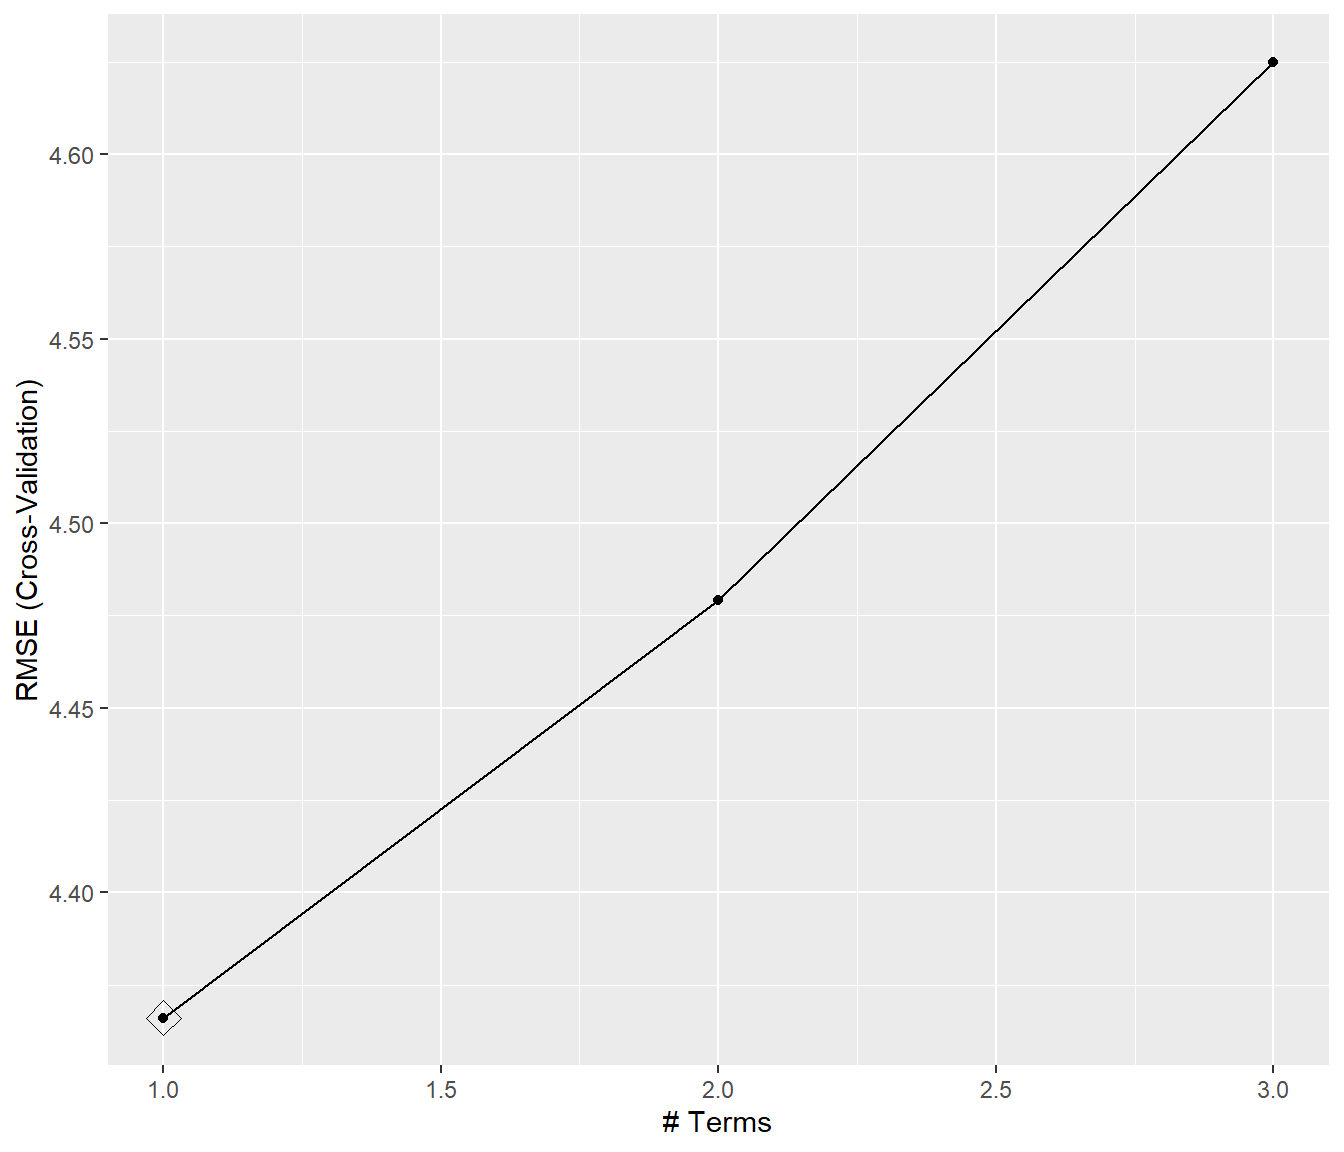 Errores RMSE de validación cruzada de los modelos PPR en función del numero de términos nterms, resaltando el valor óptimo.